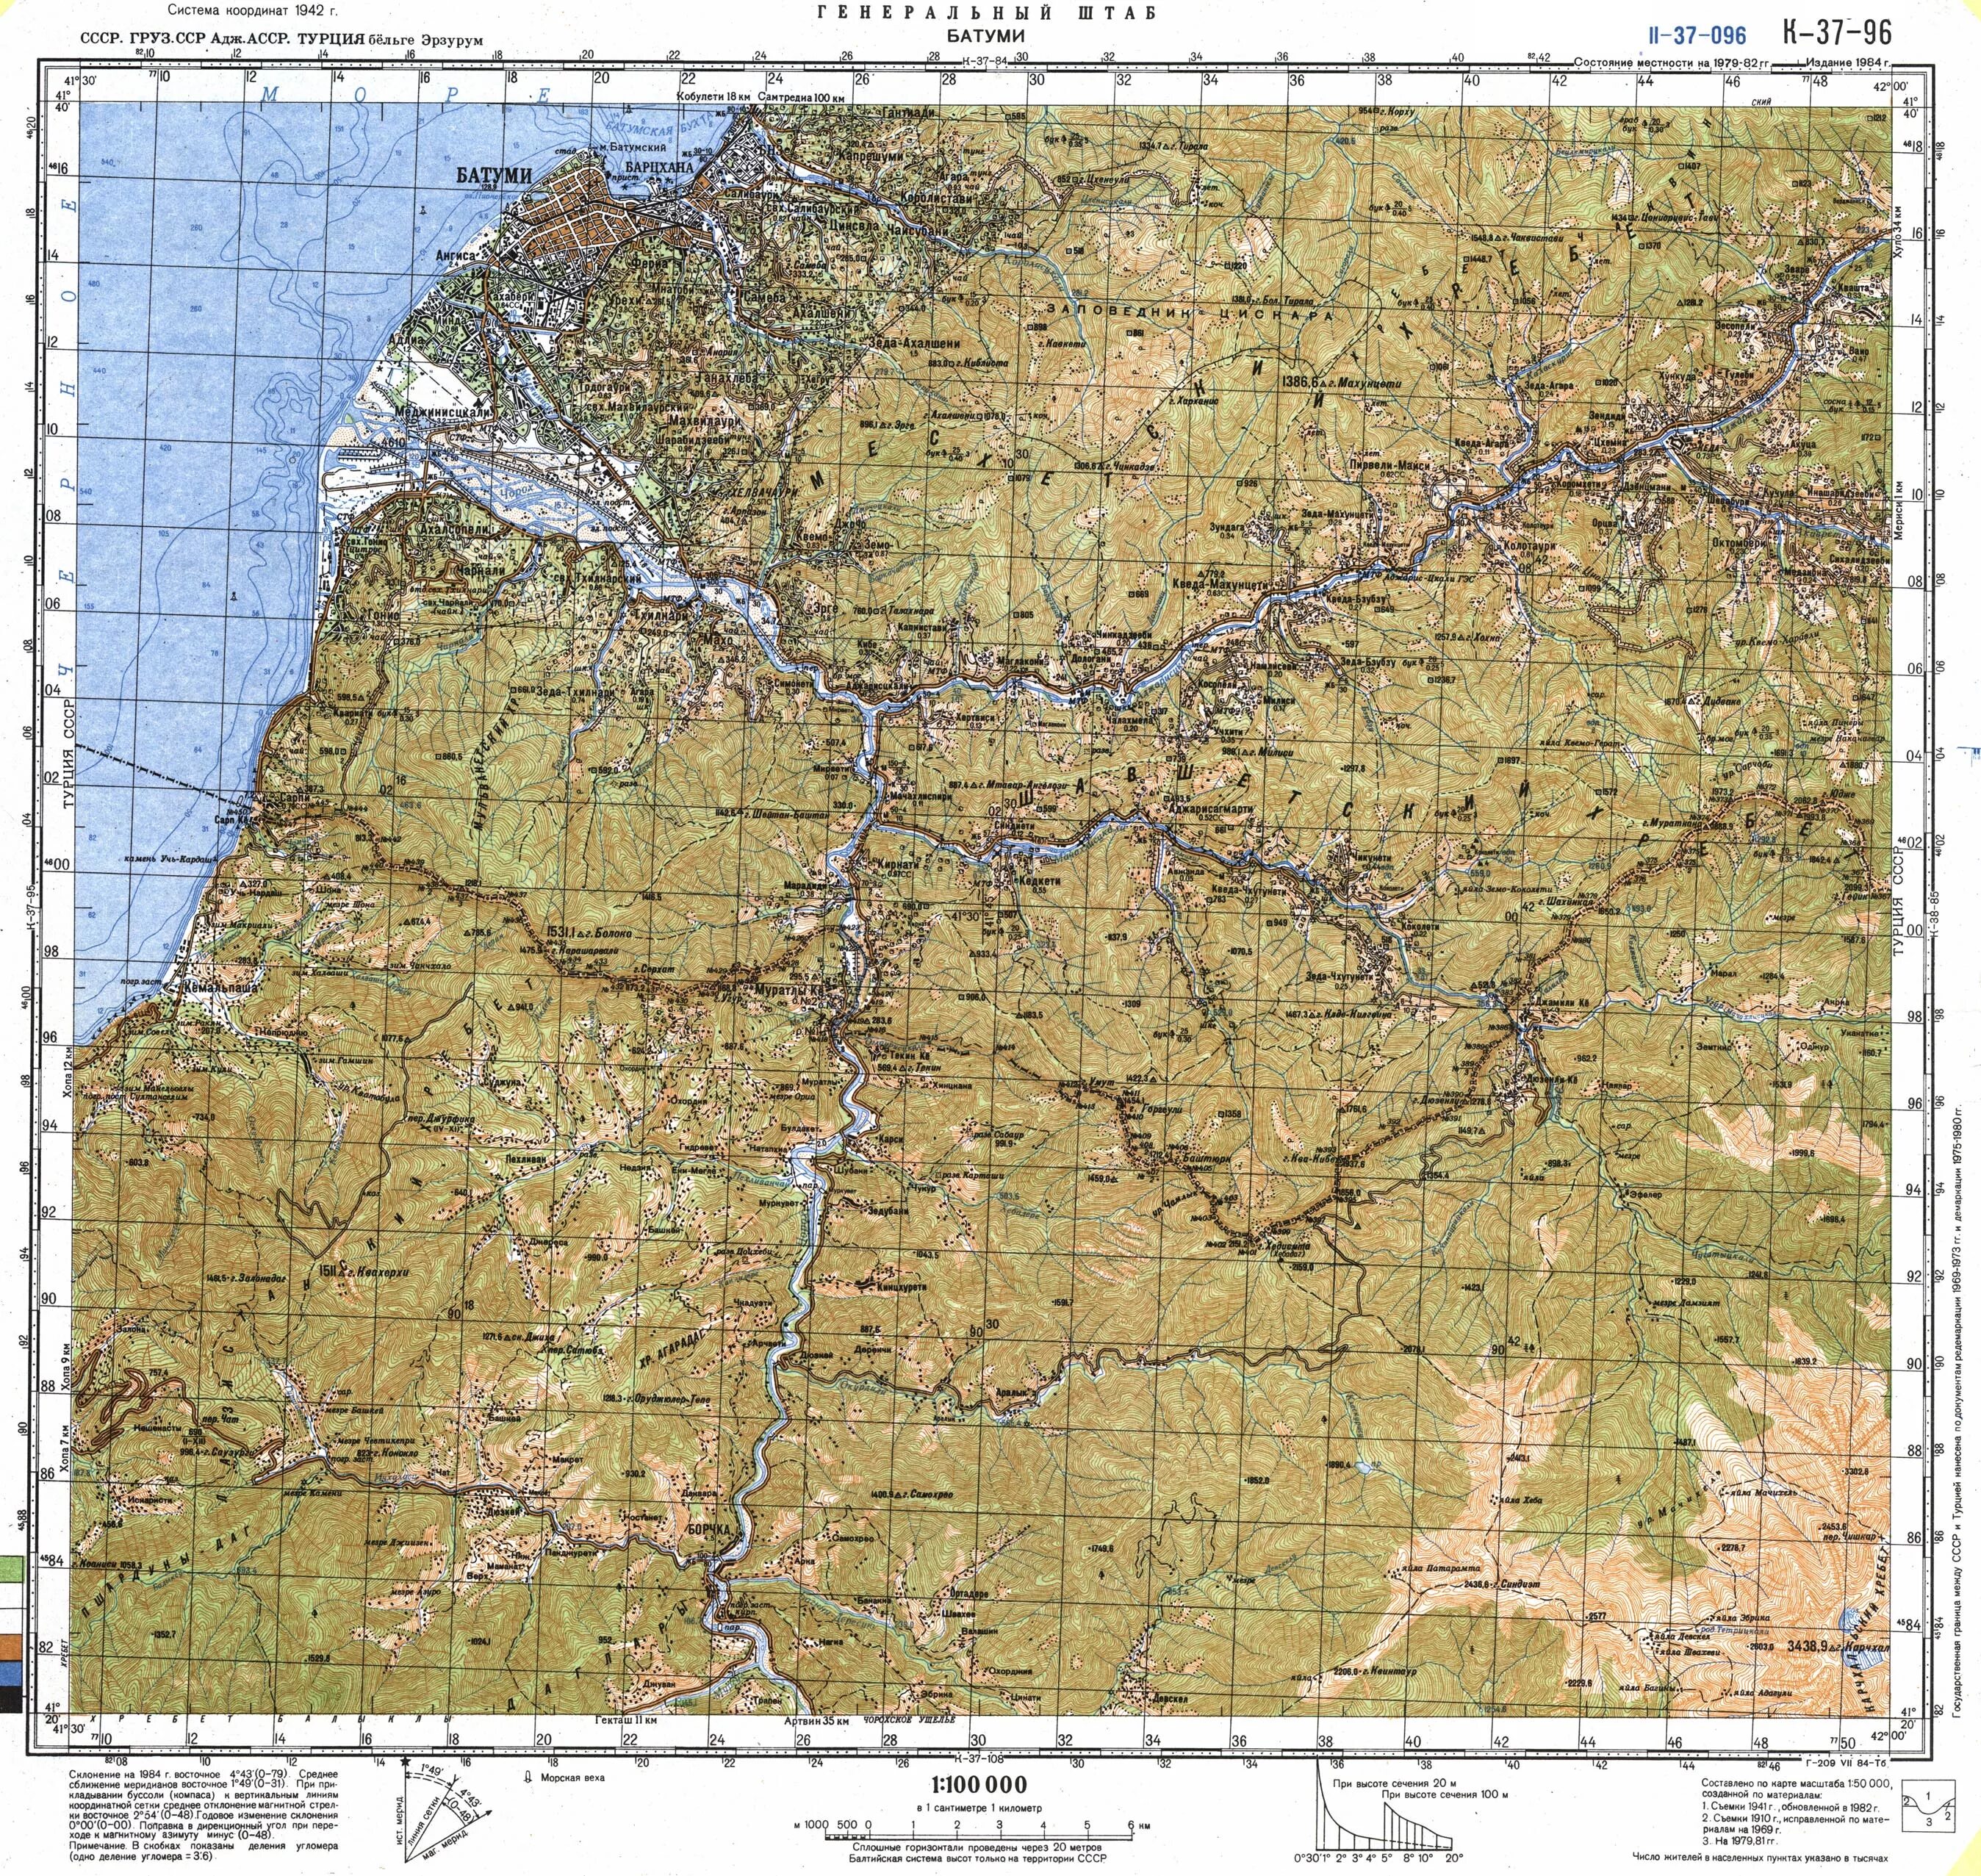 Топографическая карта Батуми. Карта Батуми и окрестностей. Физическая карта Батуми. Топографическая карта Батуми 1984 года. L 37 3